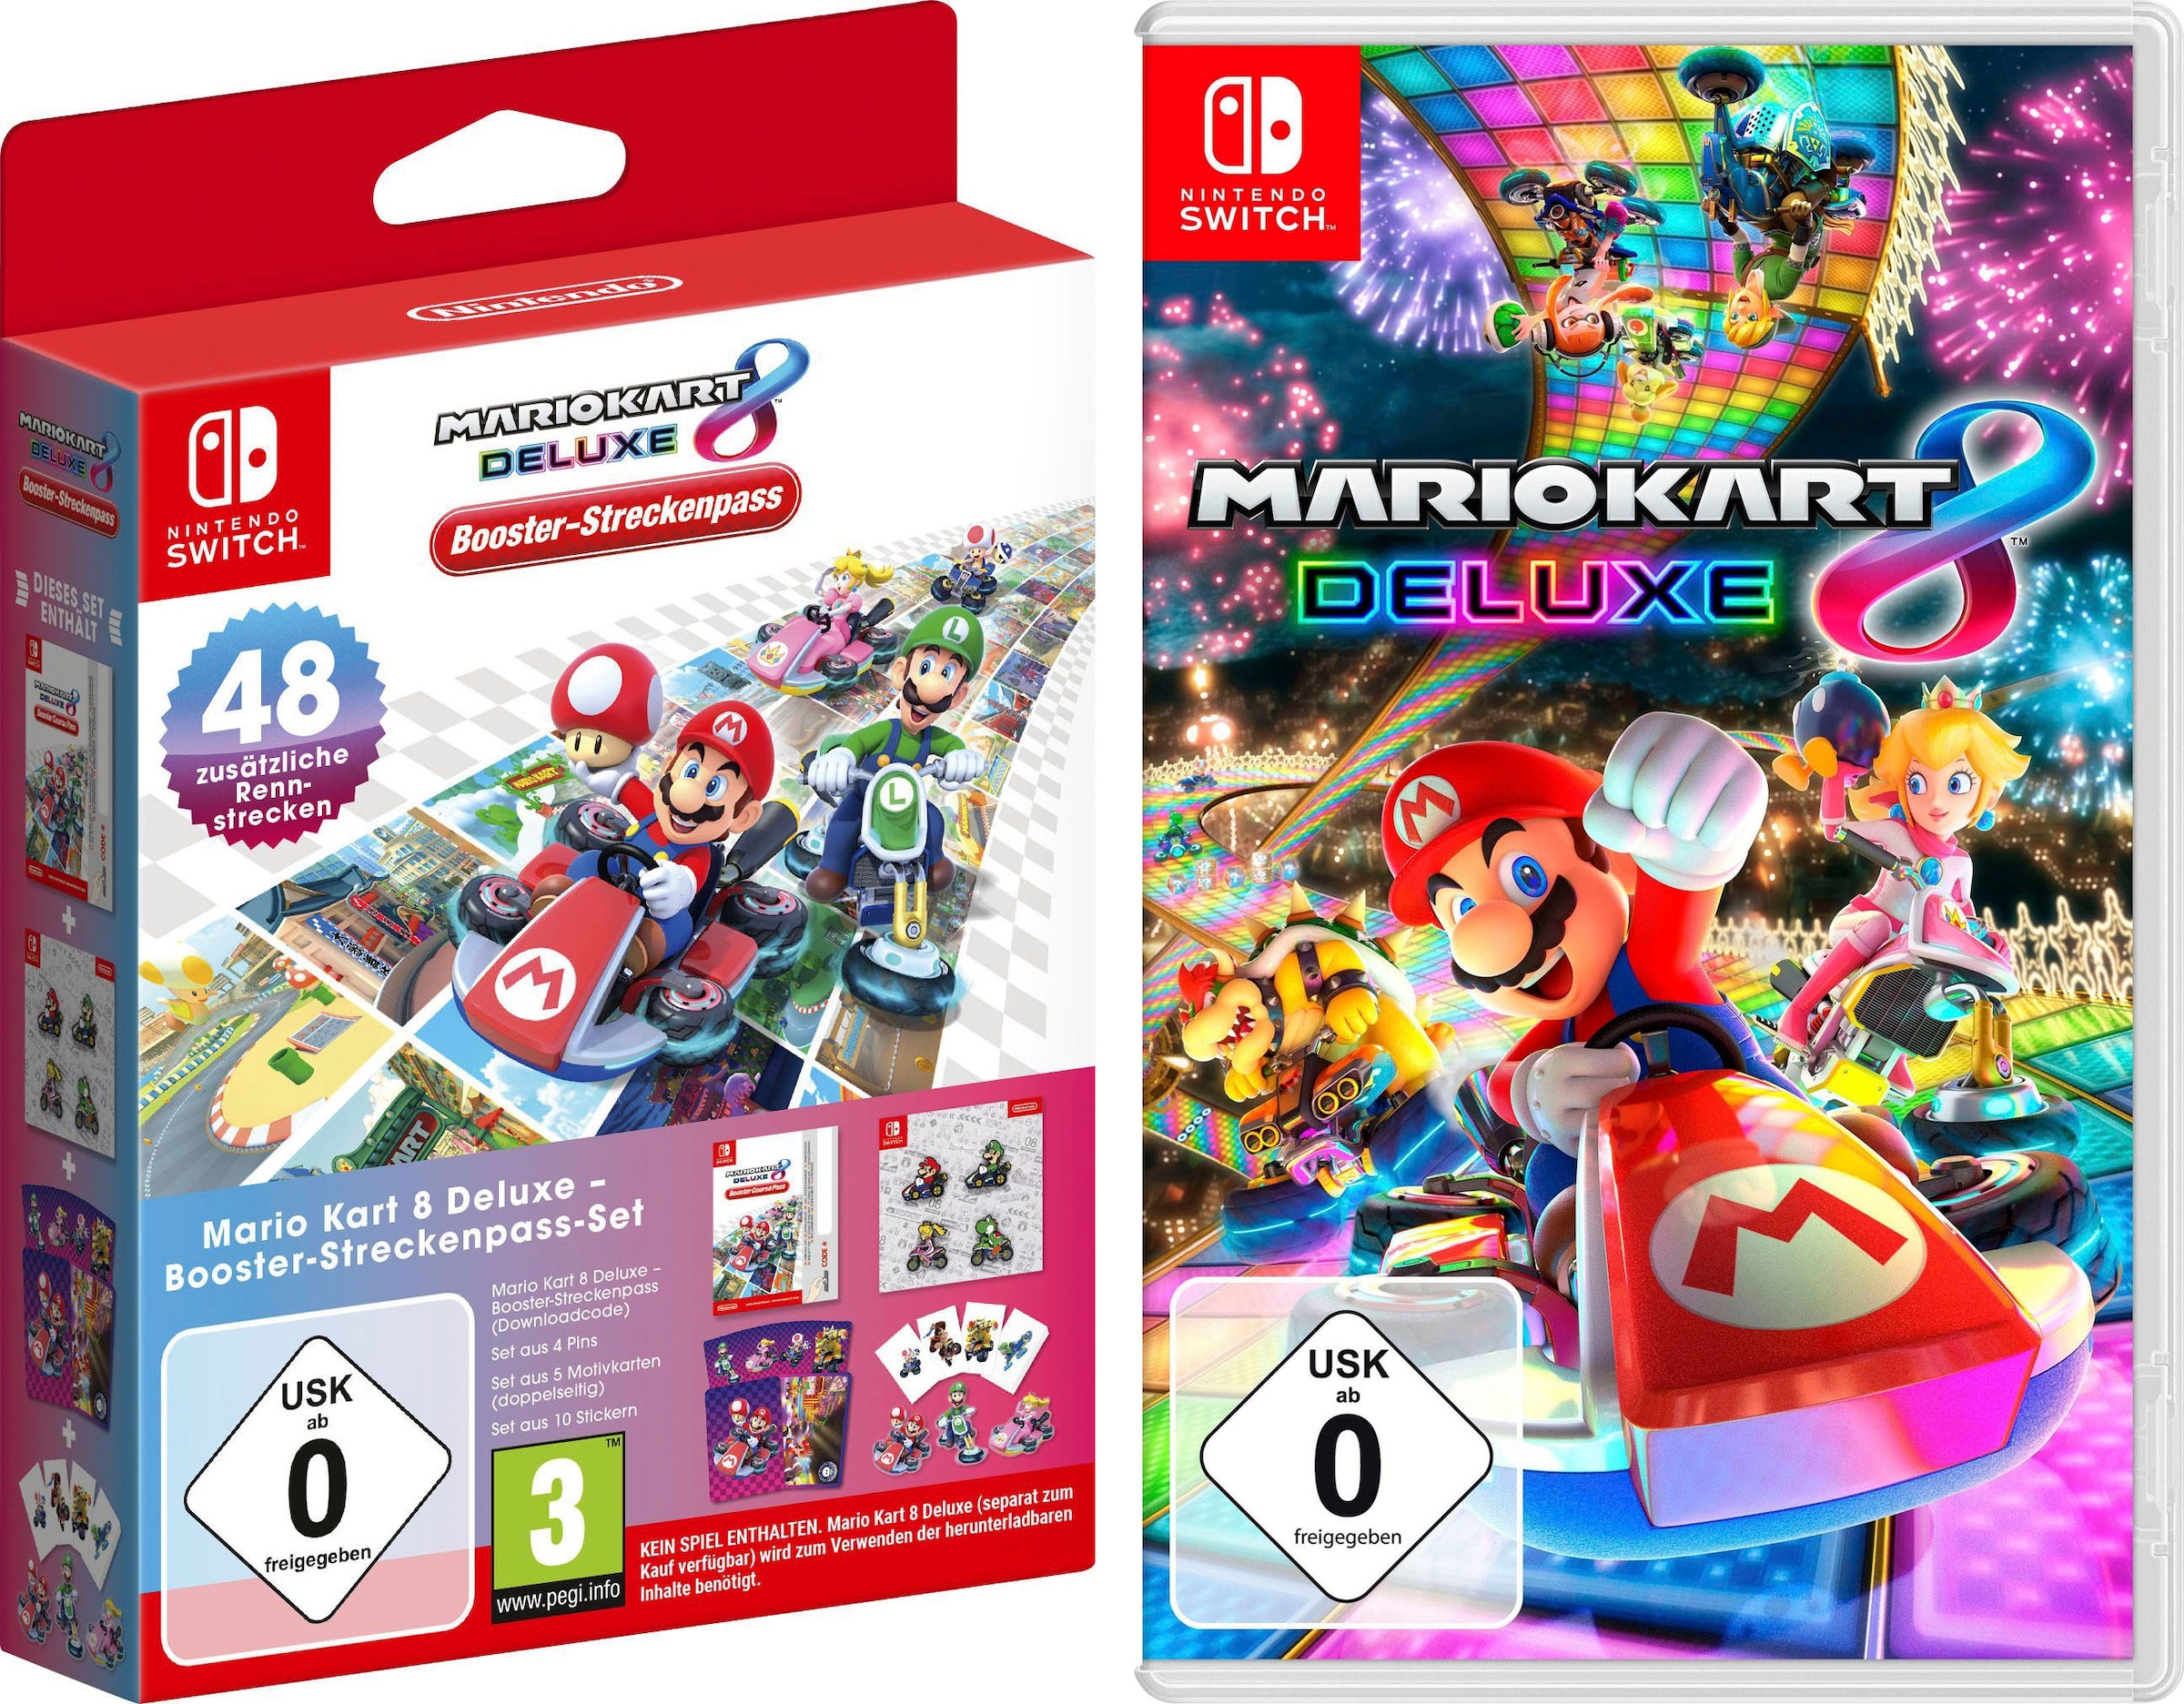 Nintendo Switch Spielesoftware »Mario Kart 8 Deluxe + Mario Kart 8 Deluxe Booster-Streckenpass-Set«, Nintendo Switch